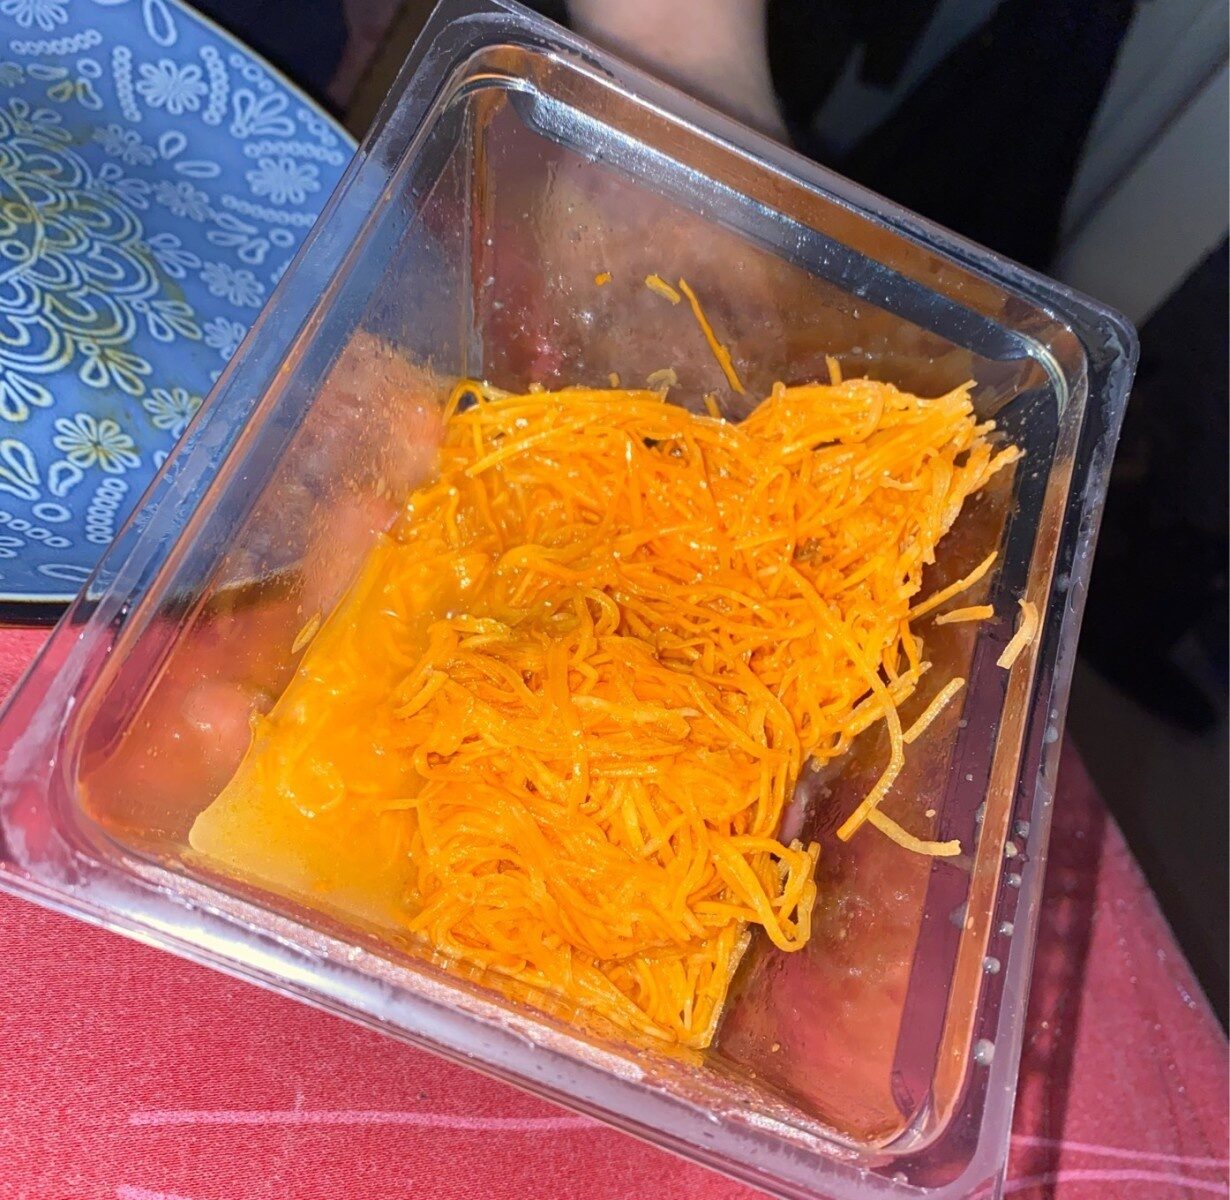 Salade de carotte - Product - fr